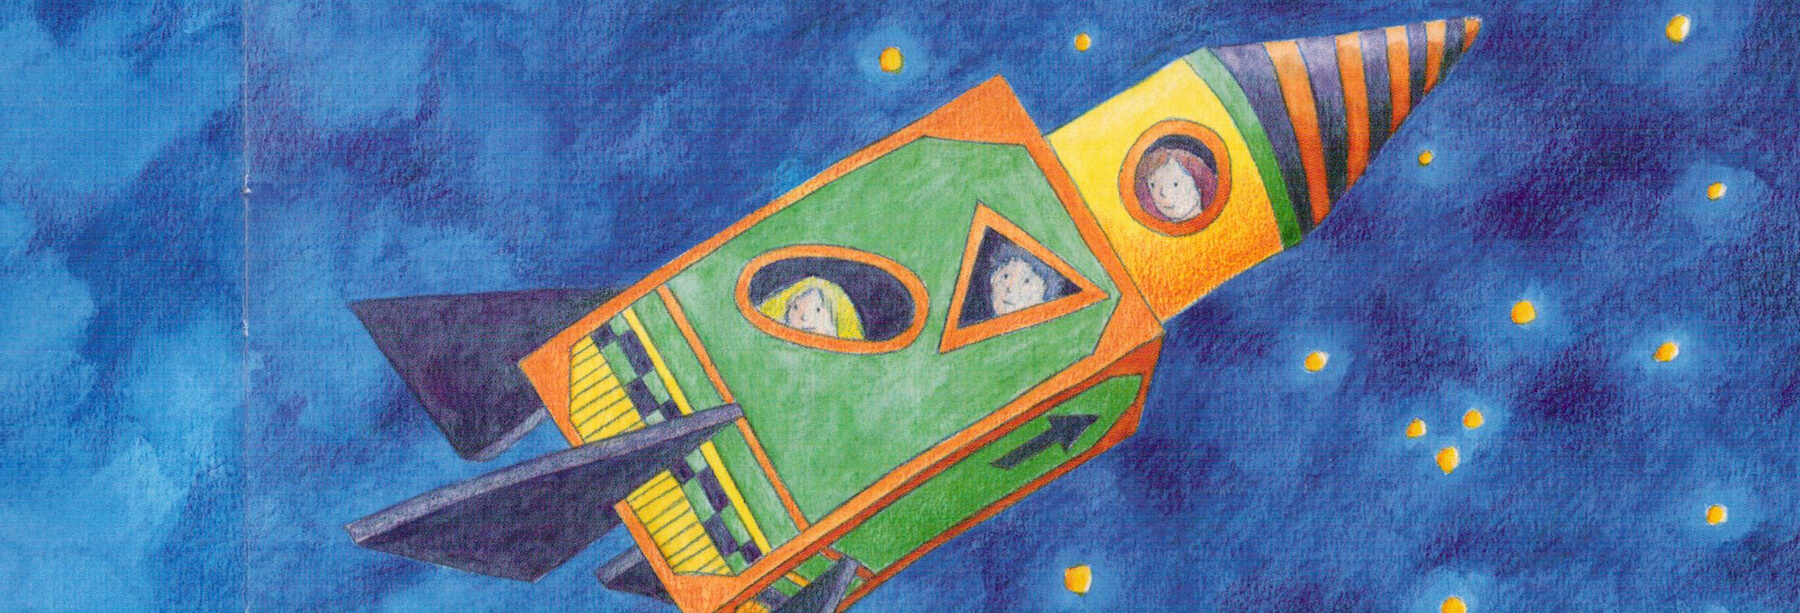 Zeichnung von drei Kindern in einer Rakete